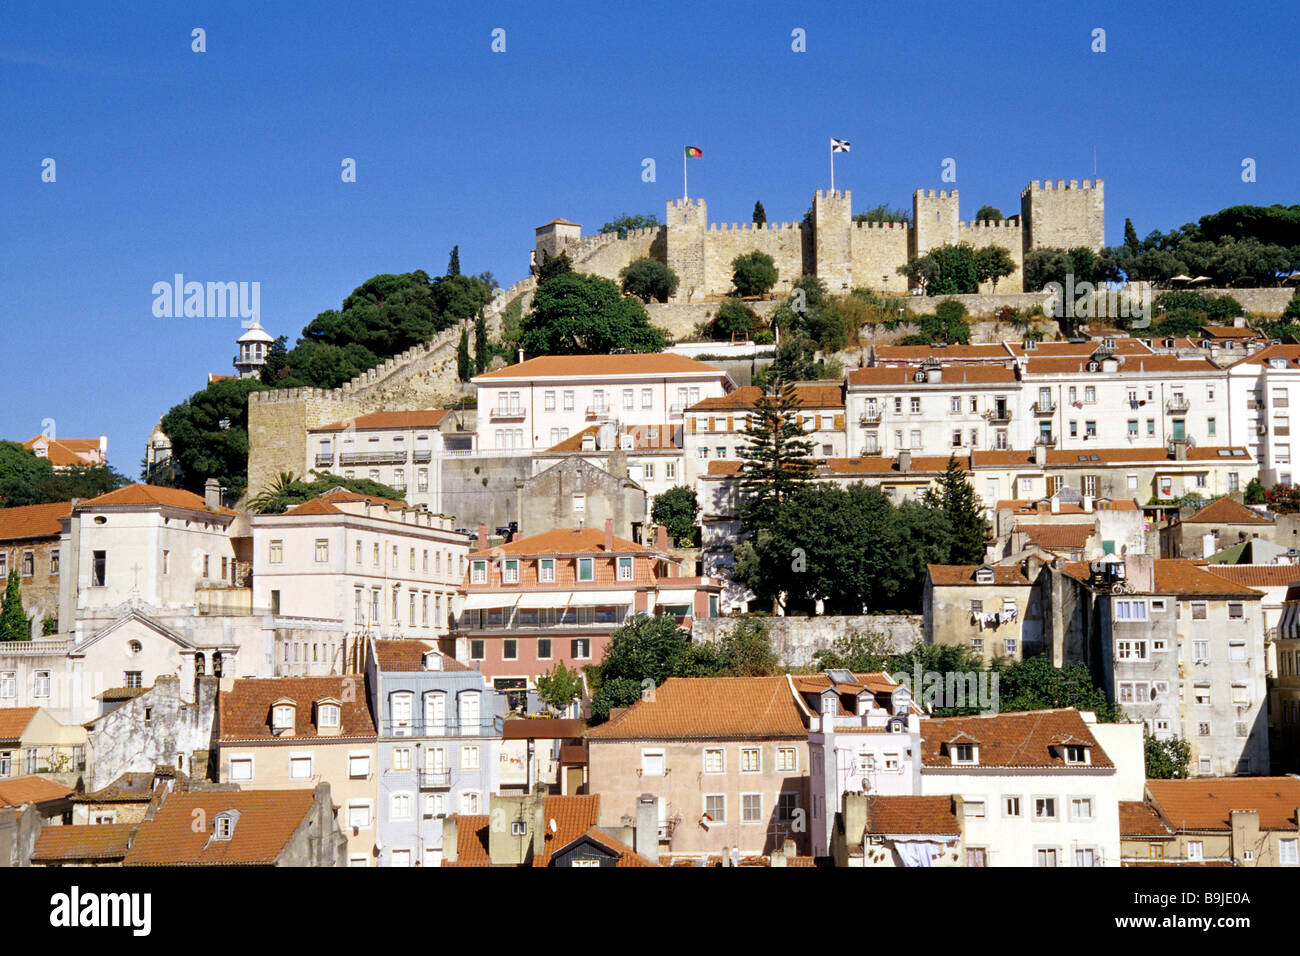 Castelo de Sao Jorge, mittelalterliche Burg im Stadtteil Mouraria, historischen Zentrum von Lissabon, Lisboa, Portugal, Europa Stockfoto